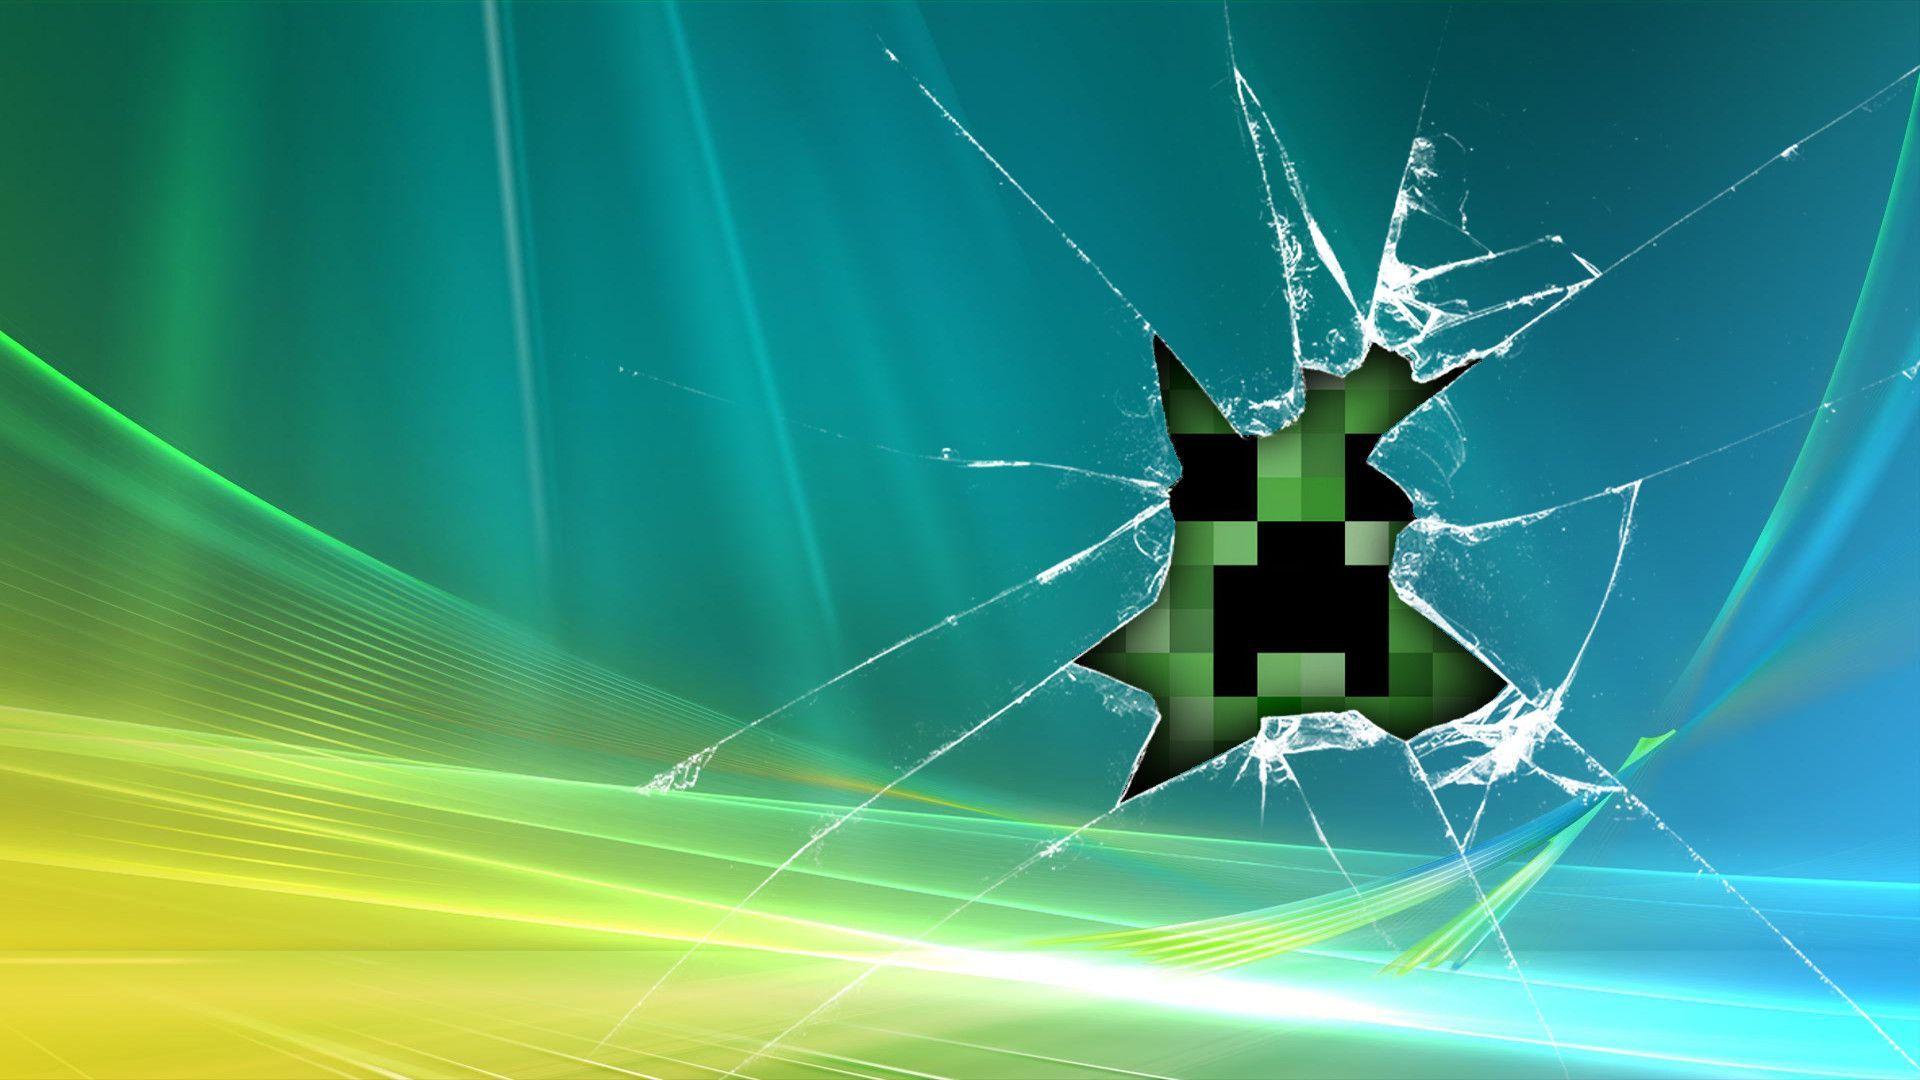 Minecraft in broken glass Wallpaper Full HD